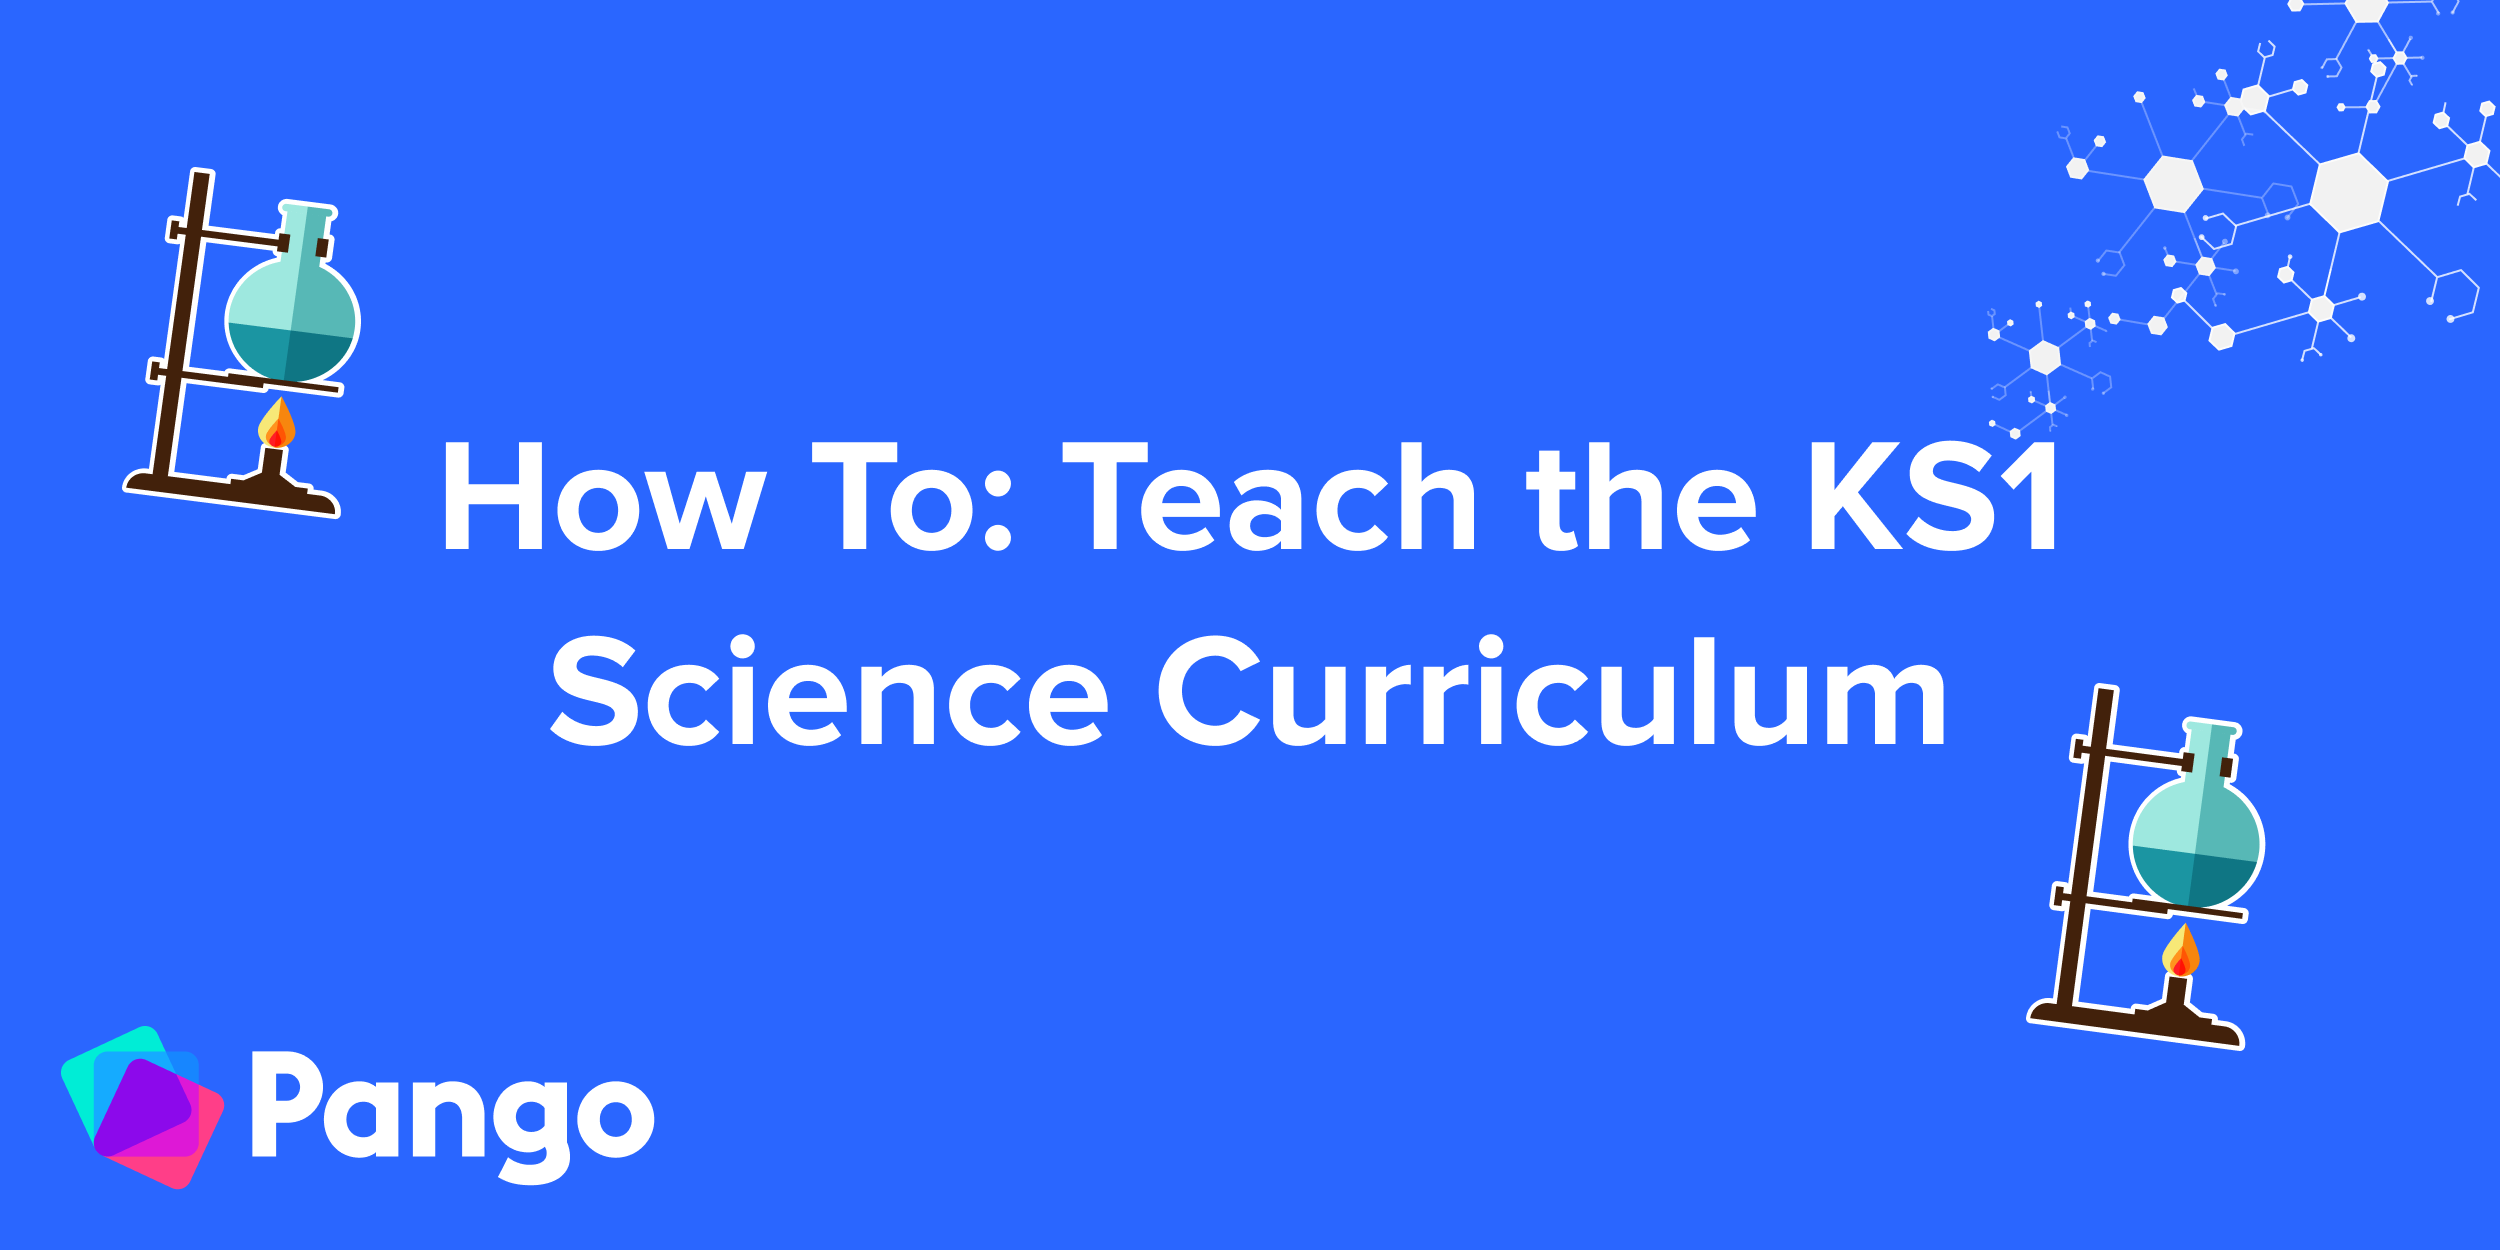 How To: Teach the KS1 Science Curriculum